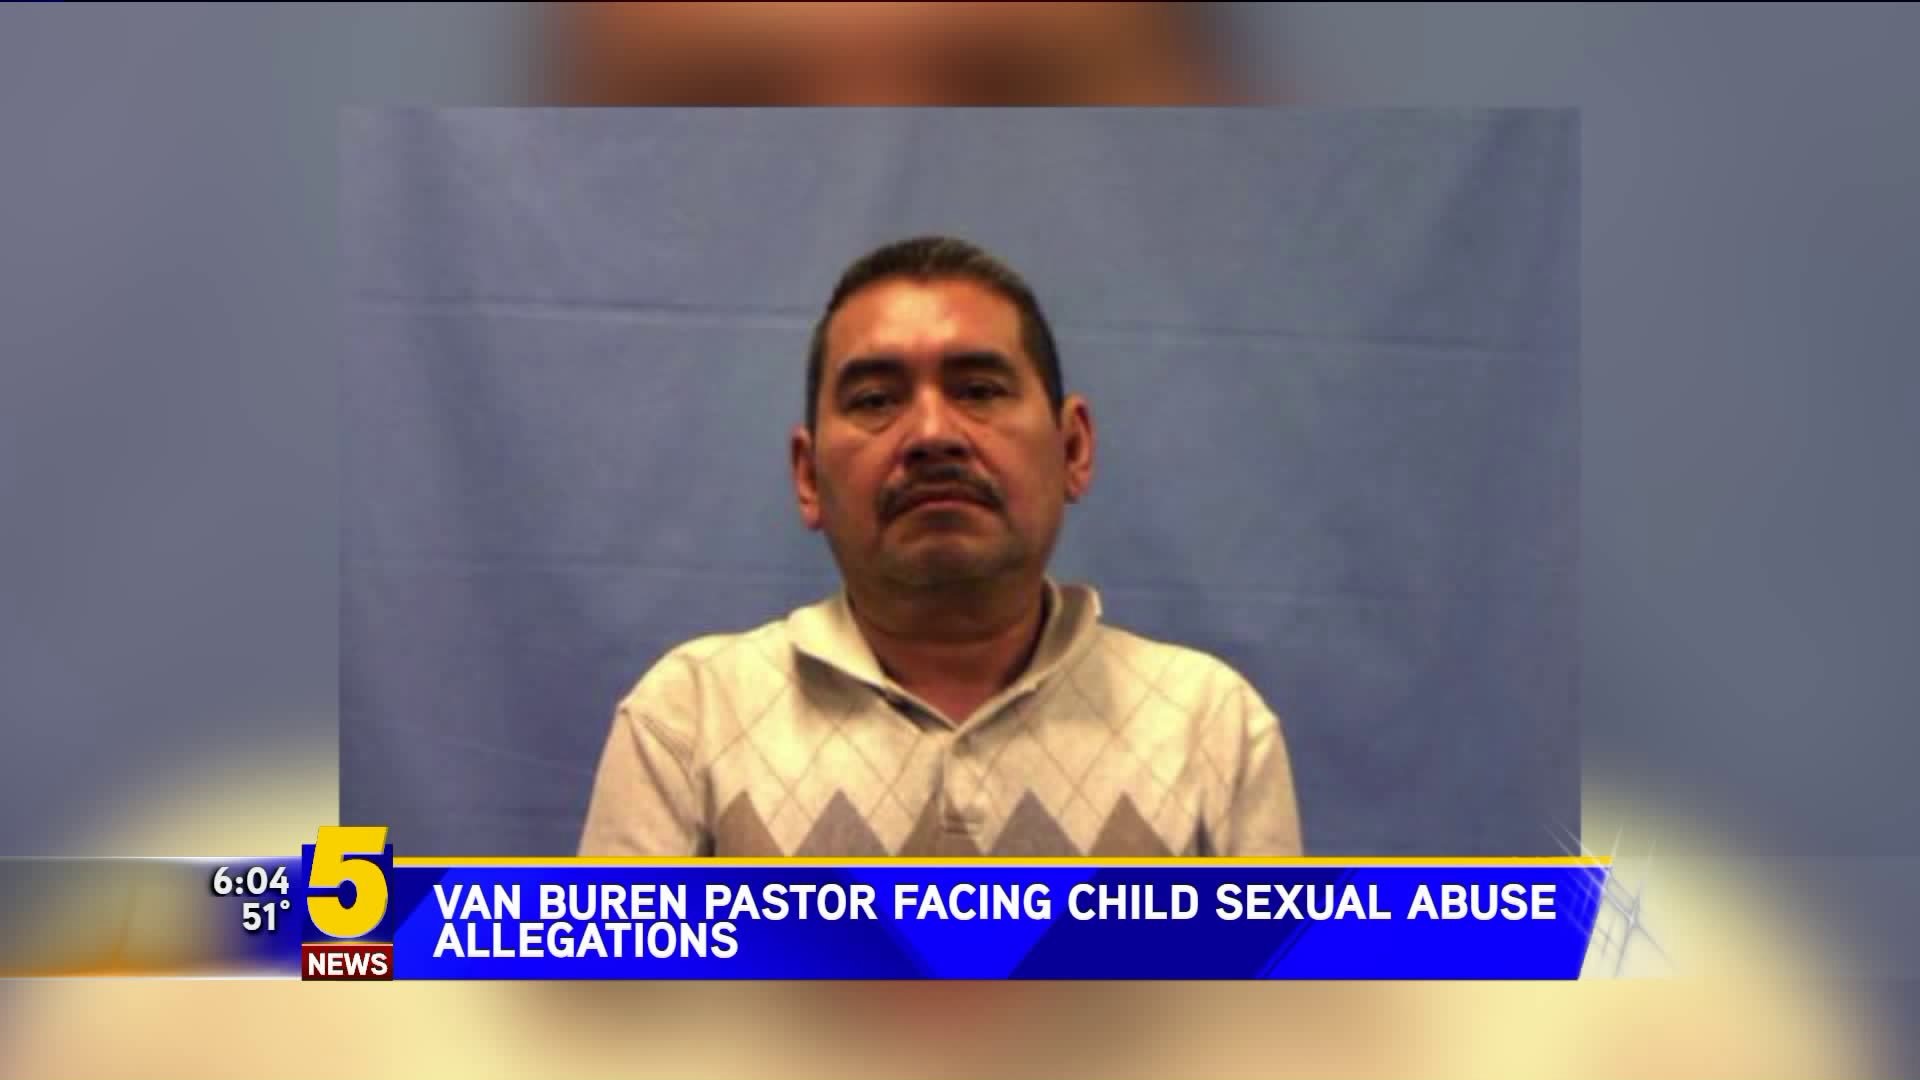 Van Buren Pastor Facing Child Sexual Abuse Allegations